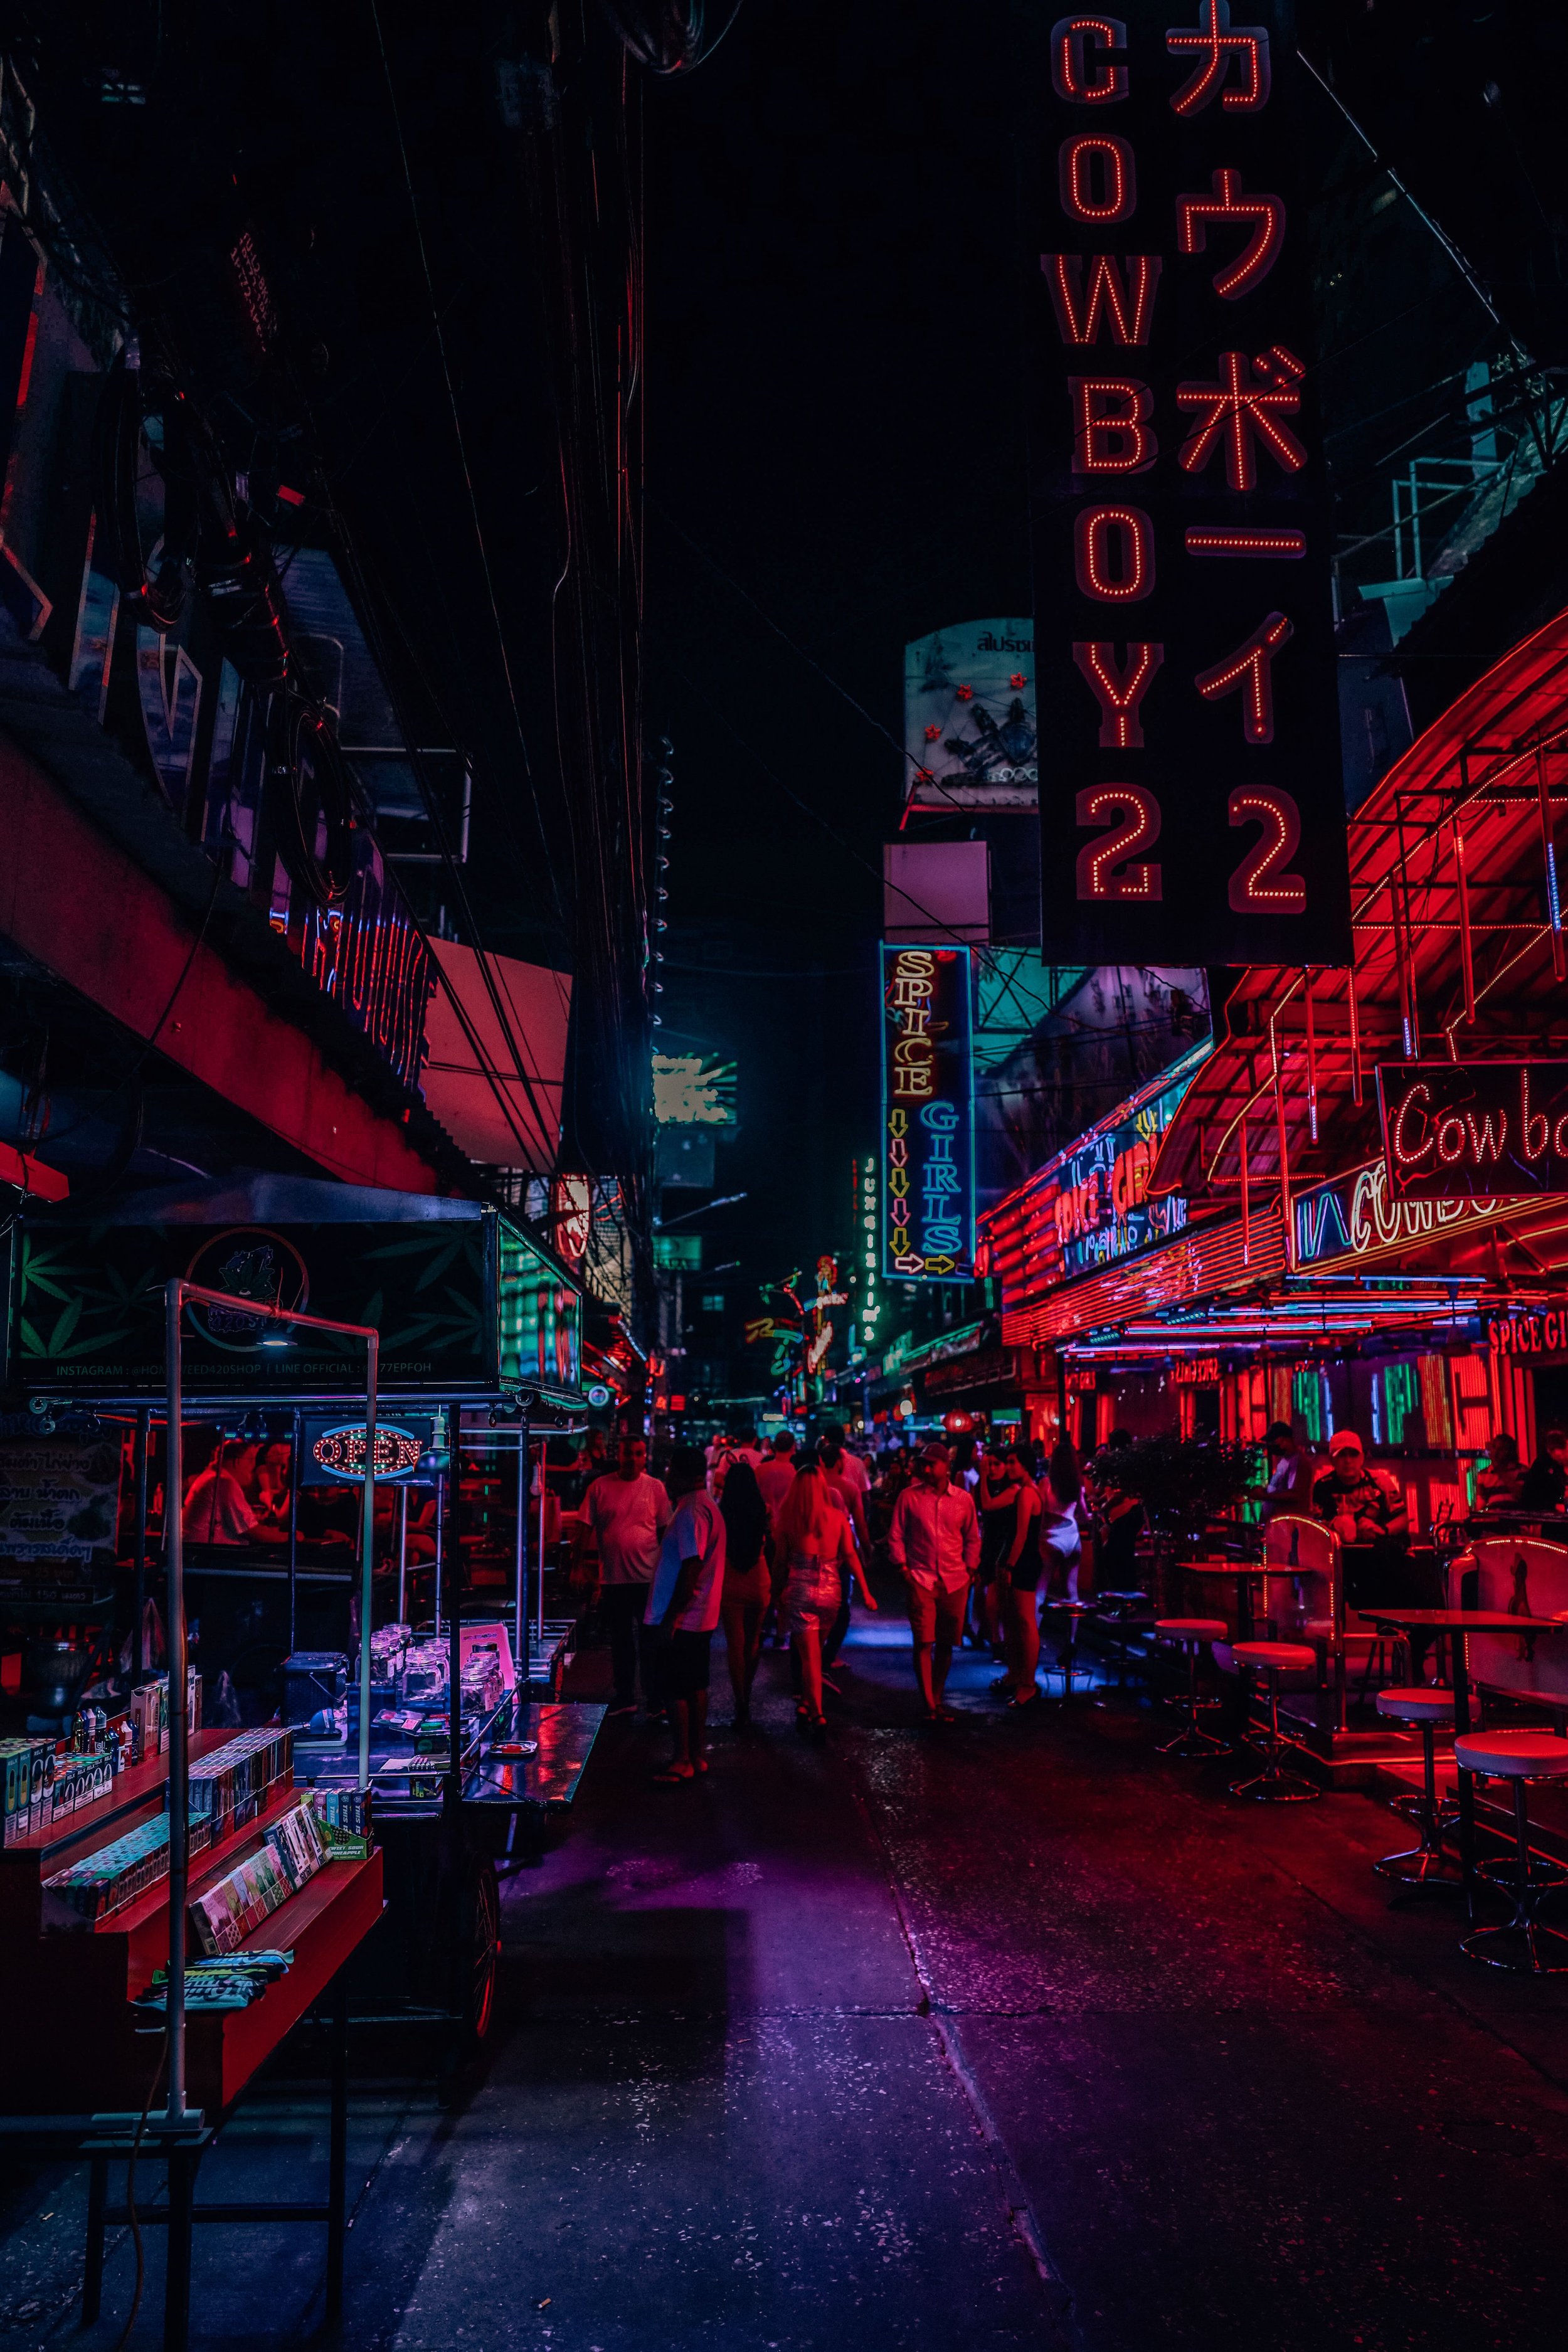 Soi Cowboy Street - Bangkok - Thailand